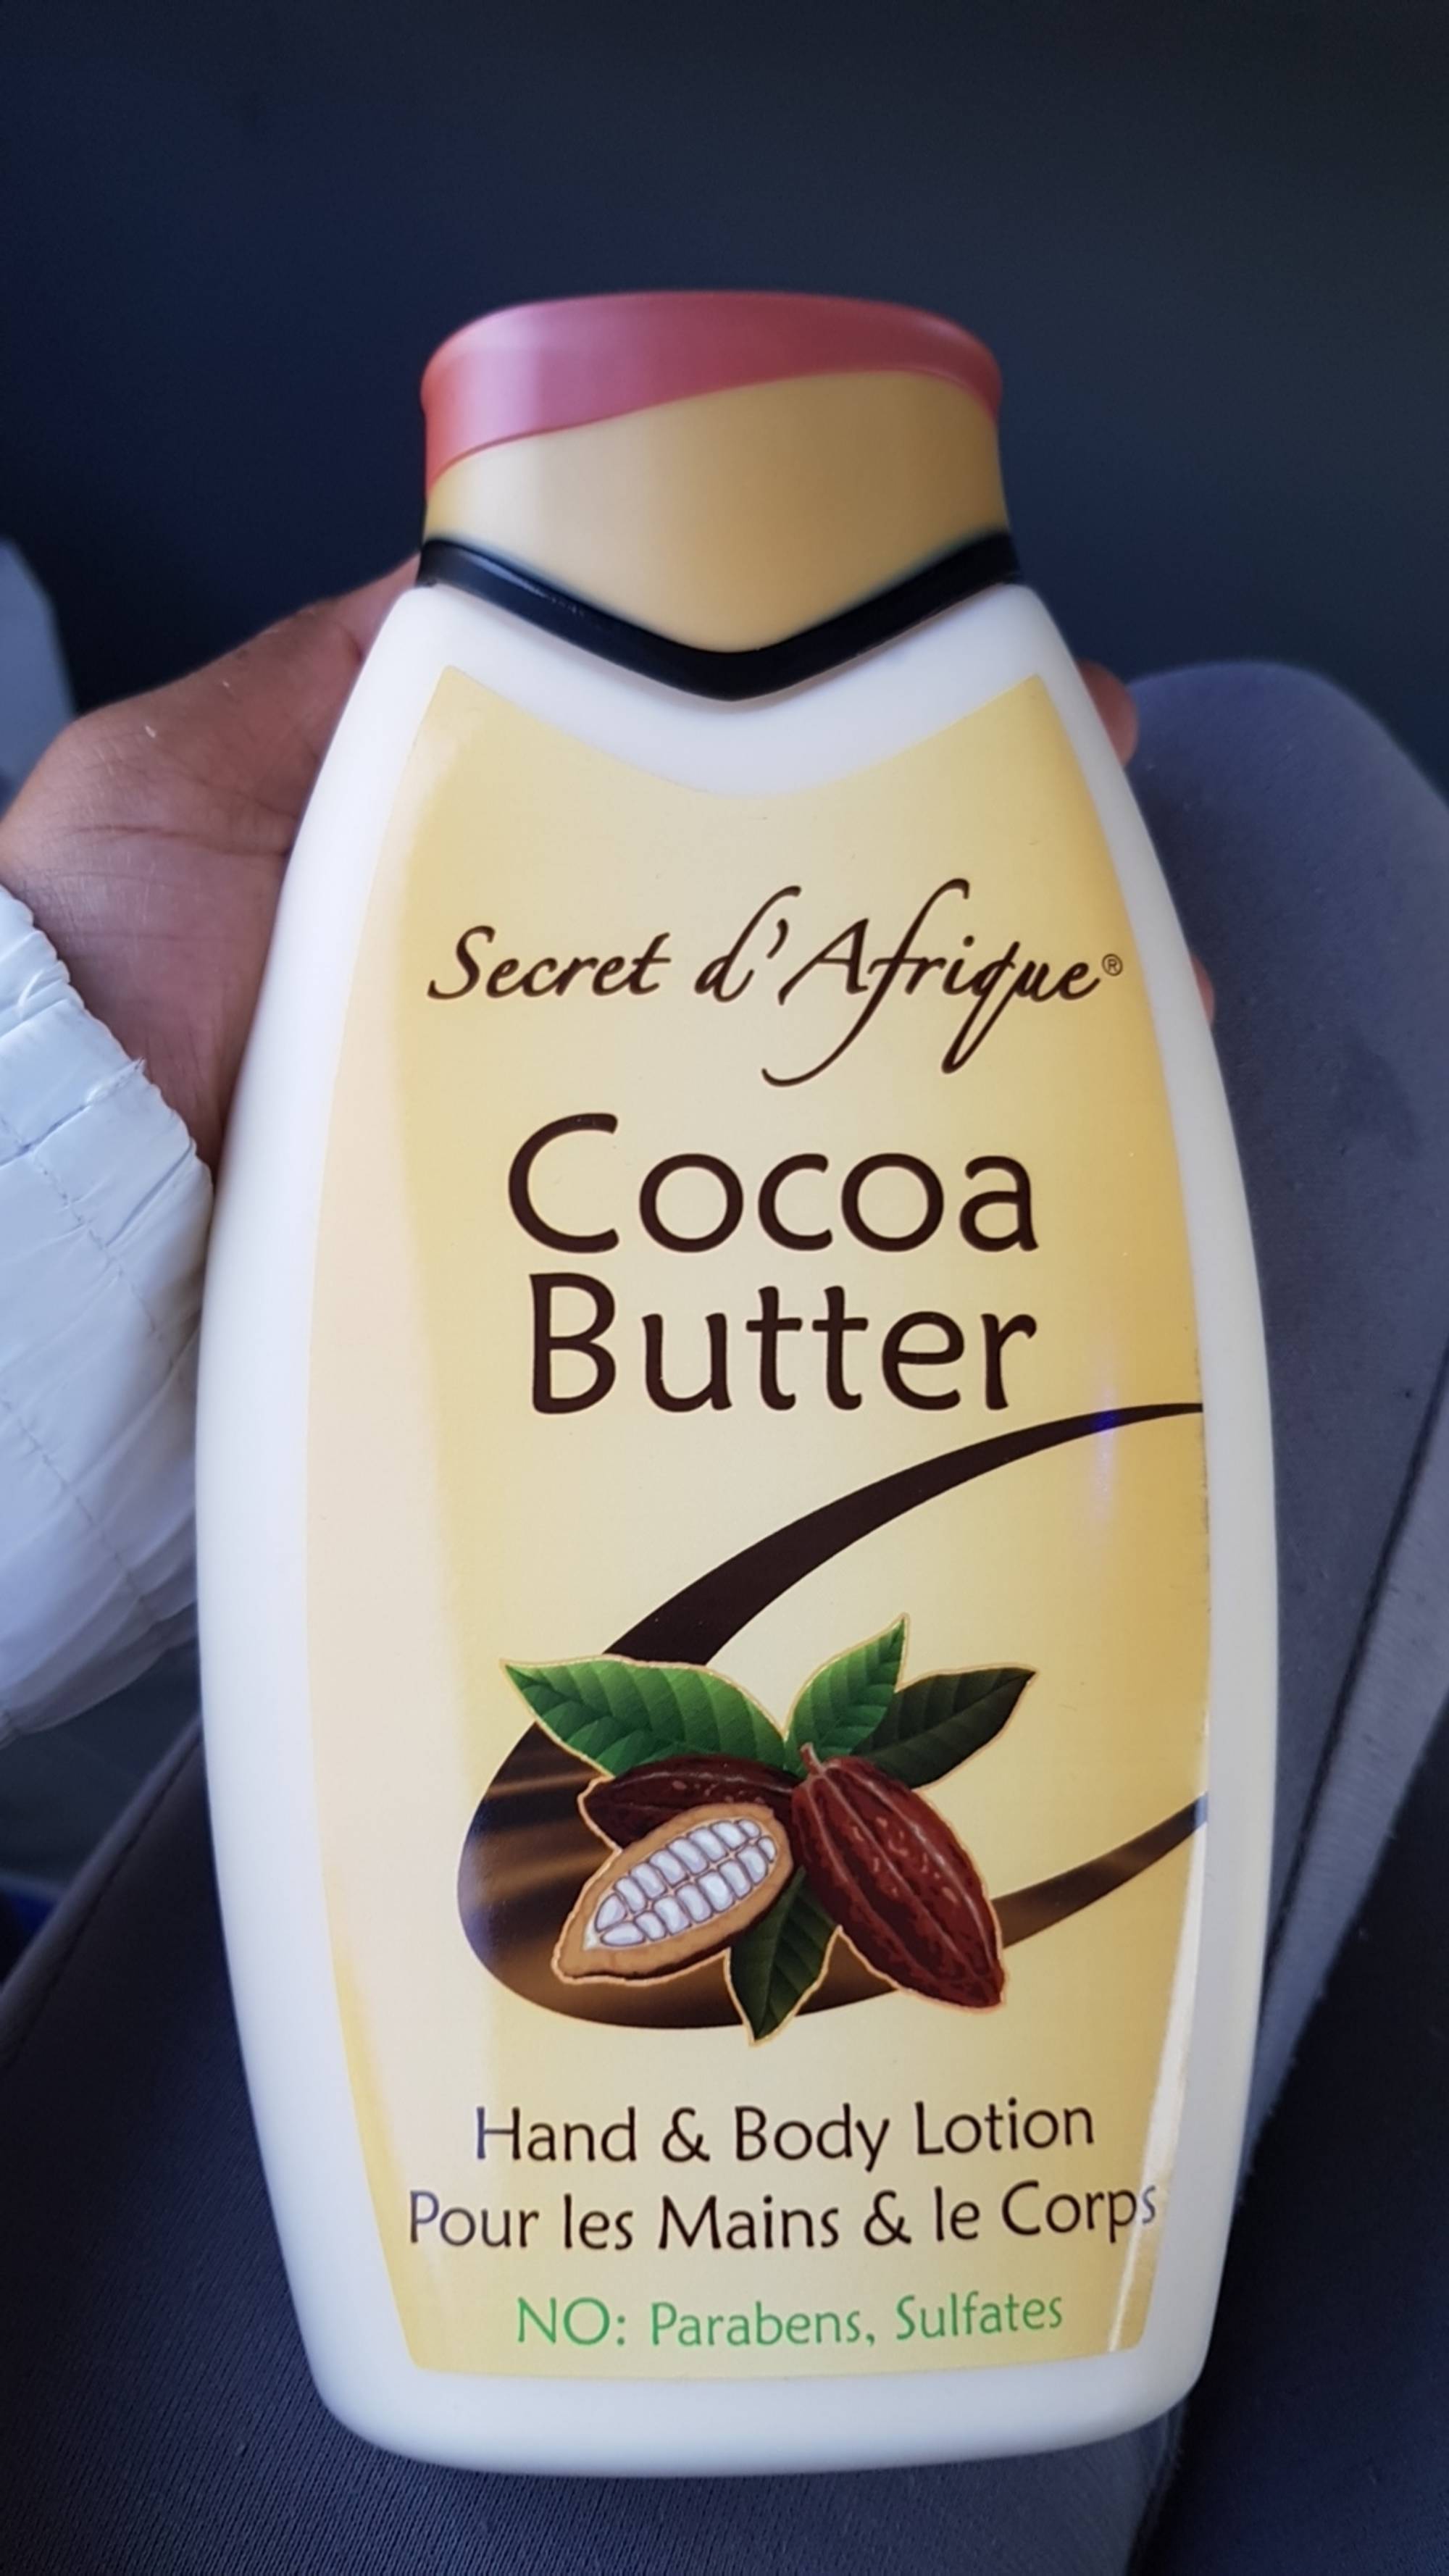 SECRET D'AFRIQUE - Cocoa butter pour les mains & le corps